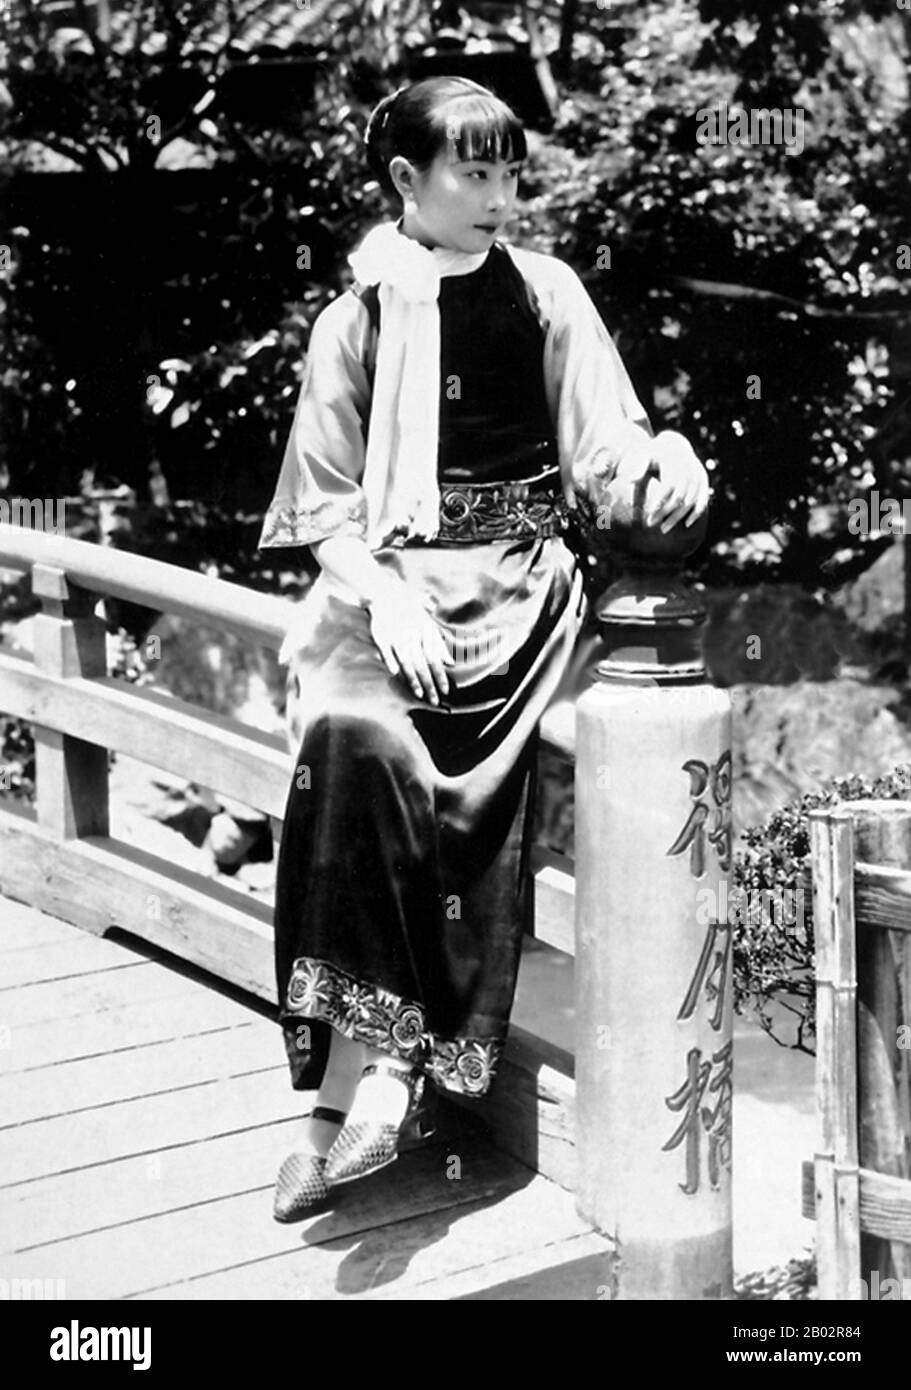 HU Die (1907-1989) ha avuto una carriera come attrice cinematografica dalla fine 1920s alla 1960s. Ha avuto il suo periodo più brillante nella 1930s e nella 1940s. All'inizio della 1930s, ha giocato il ruolo principale nel primo film sonoro della Cina, la ragazza Singsong, in cui ritrae una donna benevola ma un po' ignorante che subisce il maltrattamento e l'oppressione di suo marito senza la minima resistenza. Nel fiume Scorre Rampante, il primo film realizzato da dramatisti di sinistra, gioca il ruolo di Xiujuan, una donna che è piena di spirito di resistenza e ha un ricco mondo interiore nel suo cuore. Il suo perf Foto Stock